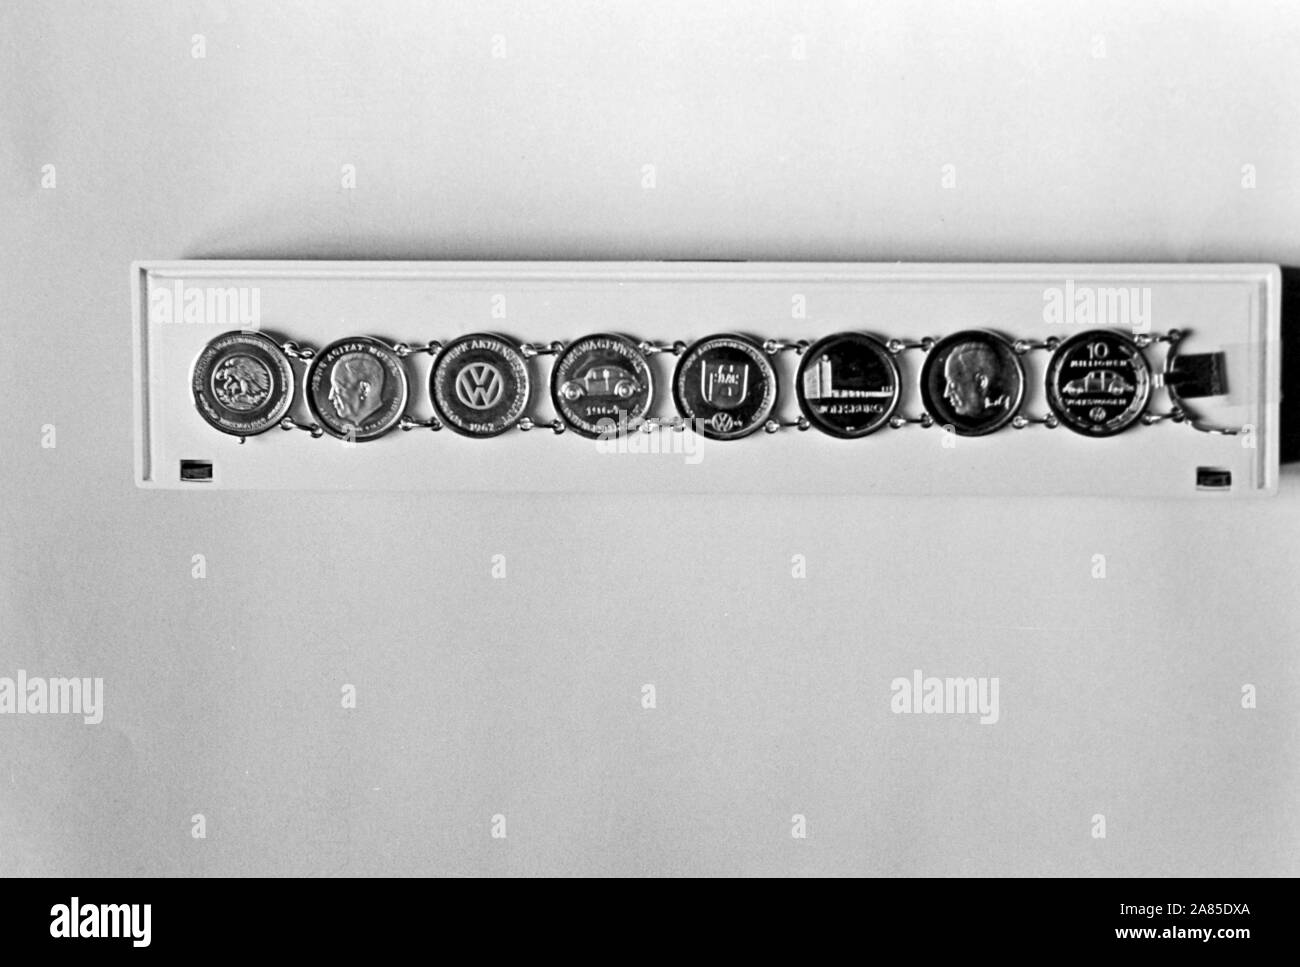 Armband mit VW Münzen, Deutschland 1970. Bracelet with Volkswagen coins, Germany 1970. Stock Photo